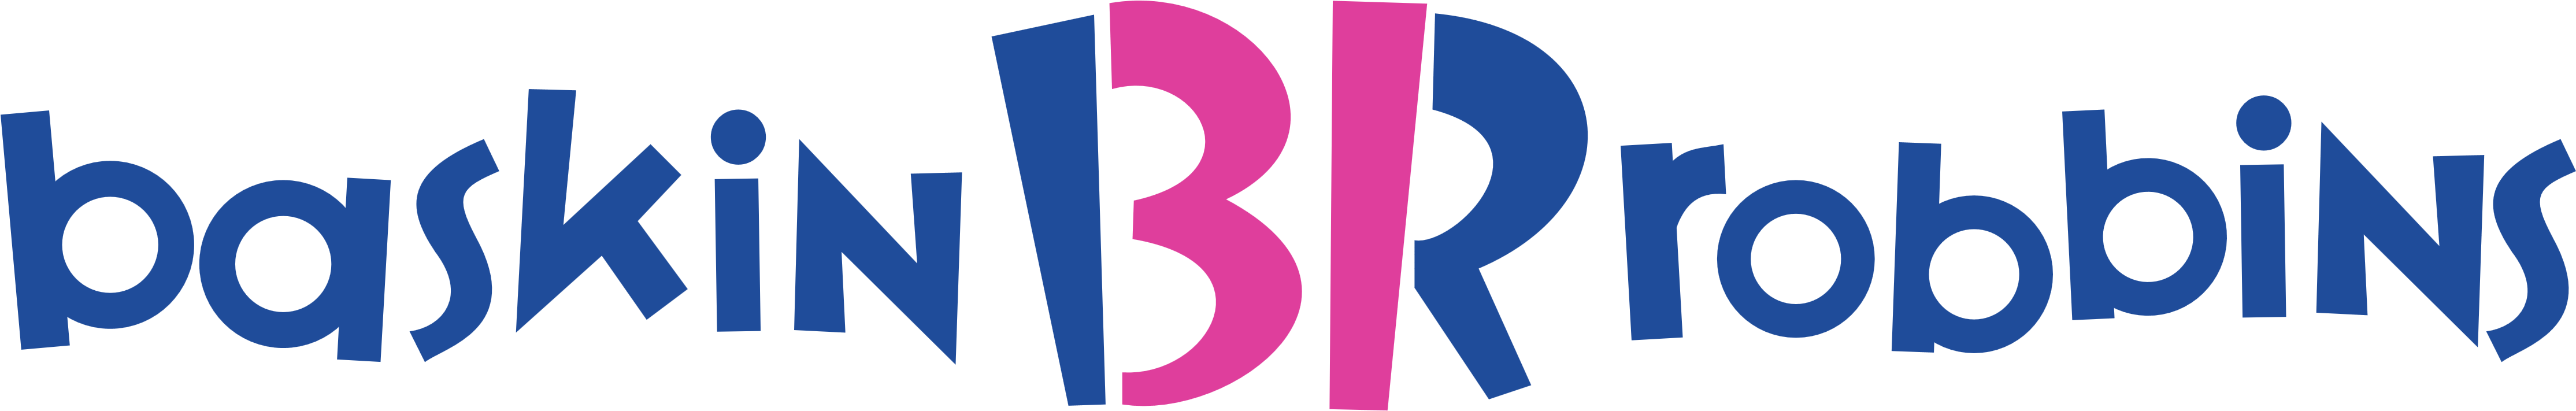 Baskin Robbins Logo Horizontal Download - Baskin Robbins Logo Svg Clipart (1924x684), Png Download